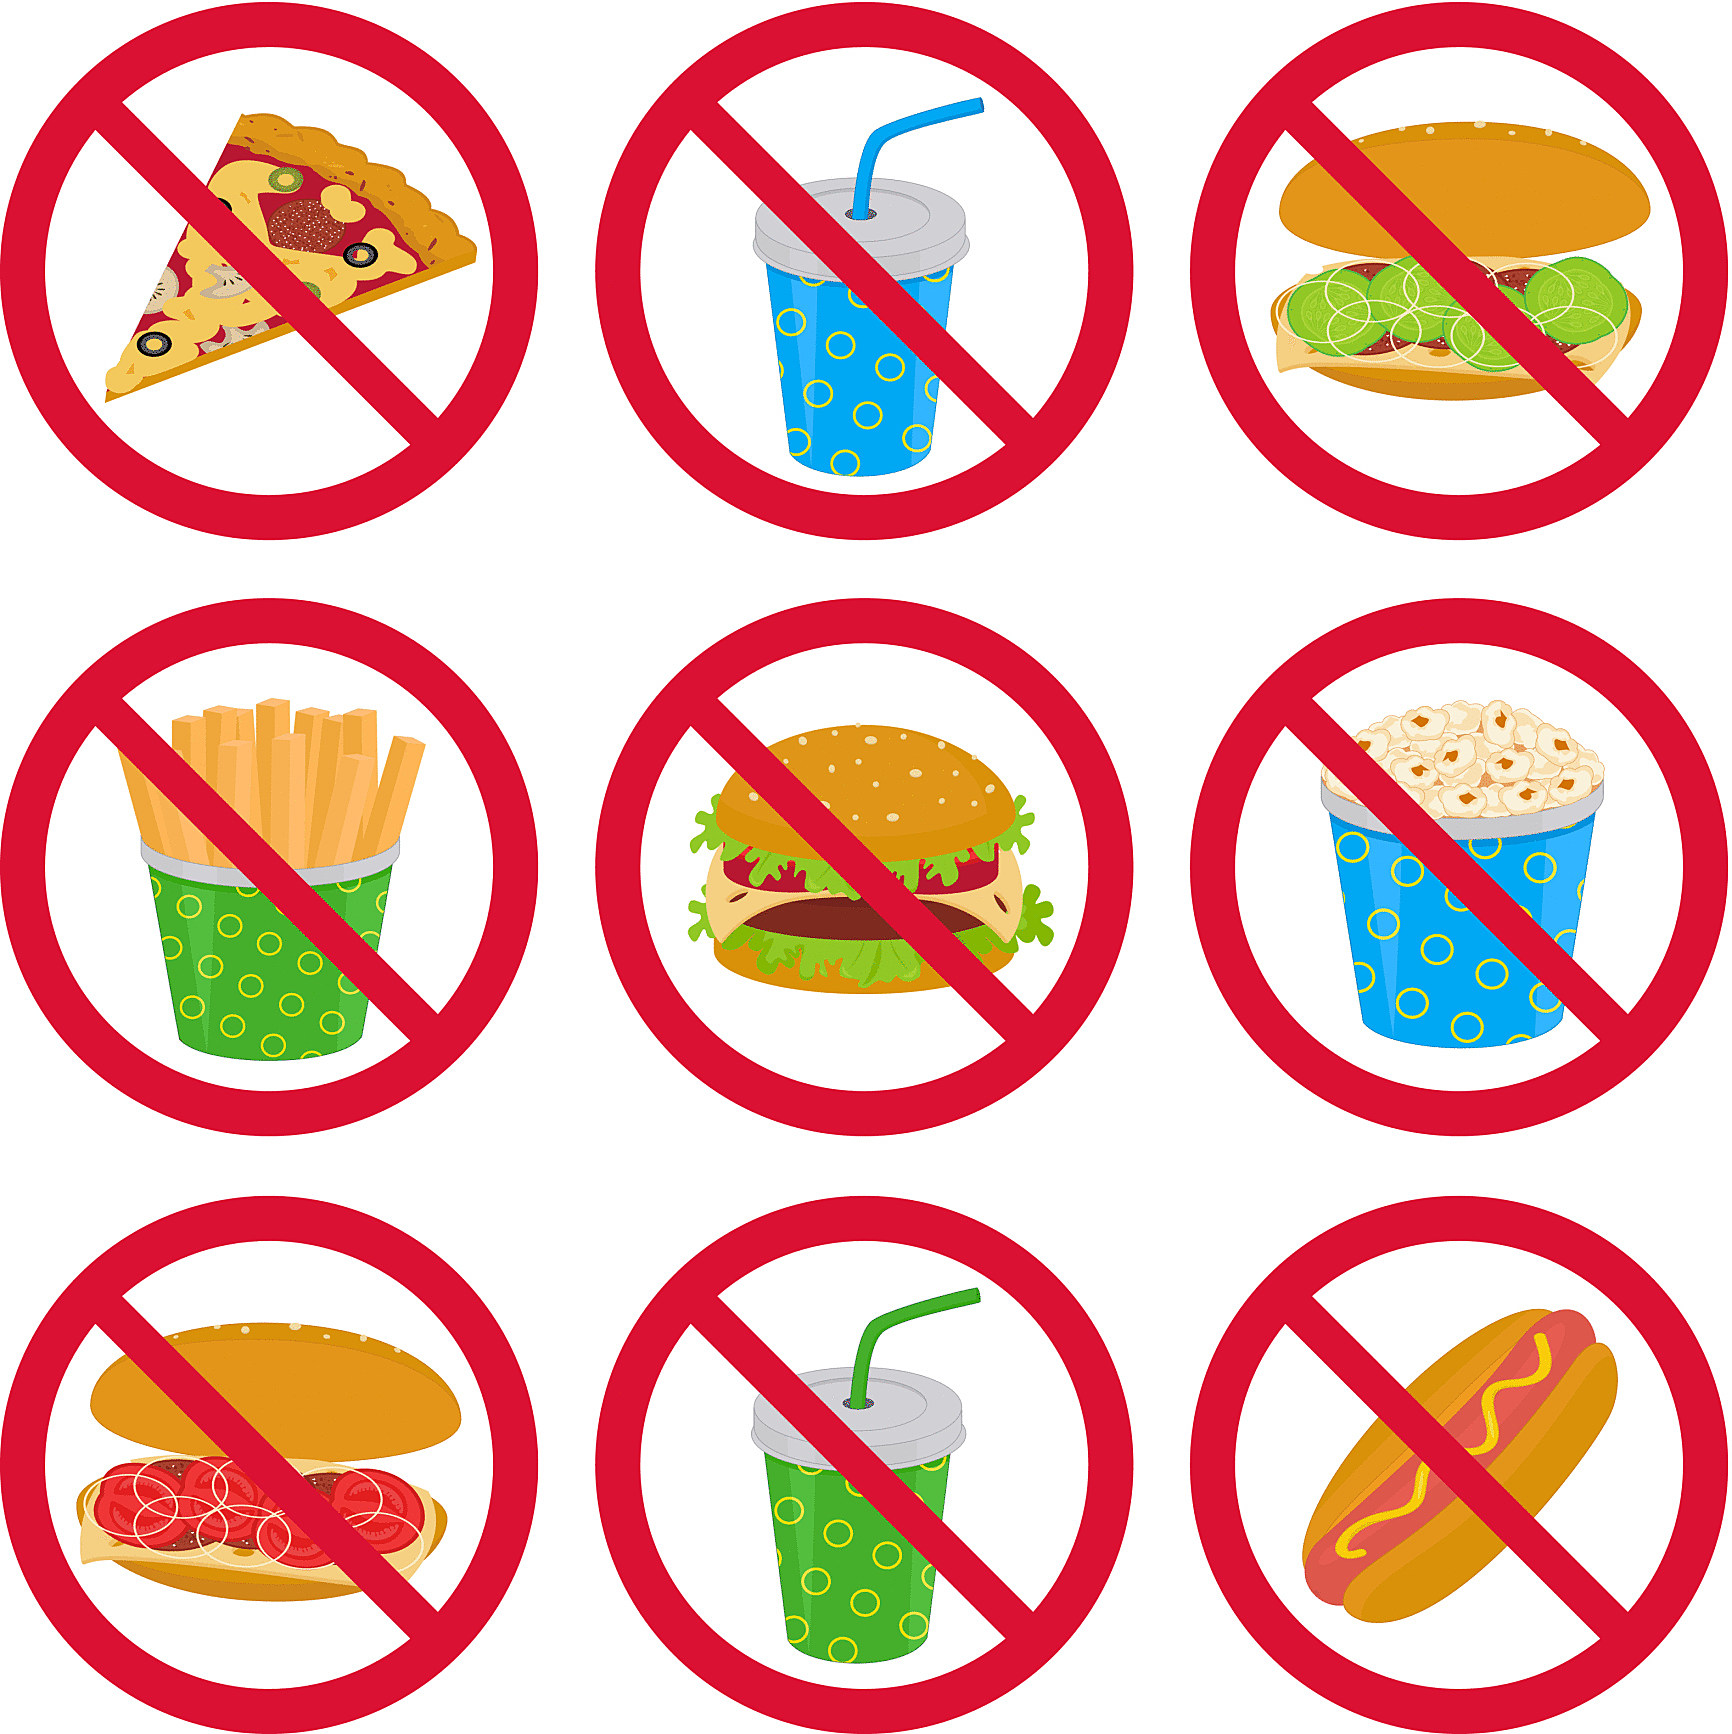 Чего нельзя делать в жизни. Запрет на вредную пищу. Знаки здорового образа жизни. Знак запрета вредной еды. Рисунок вредные привычки в еде.